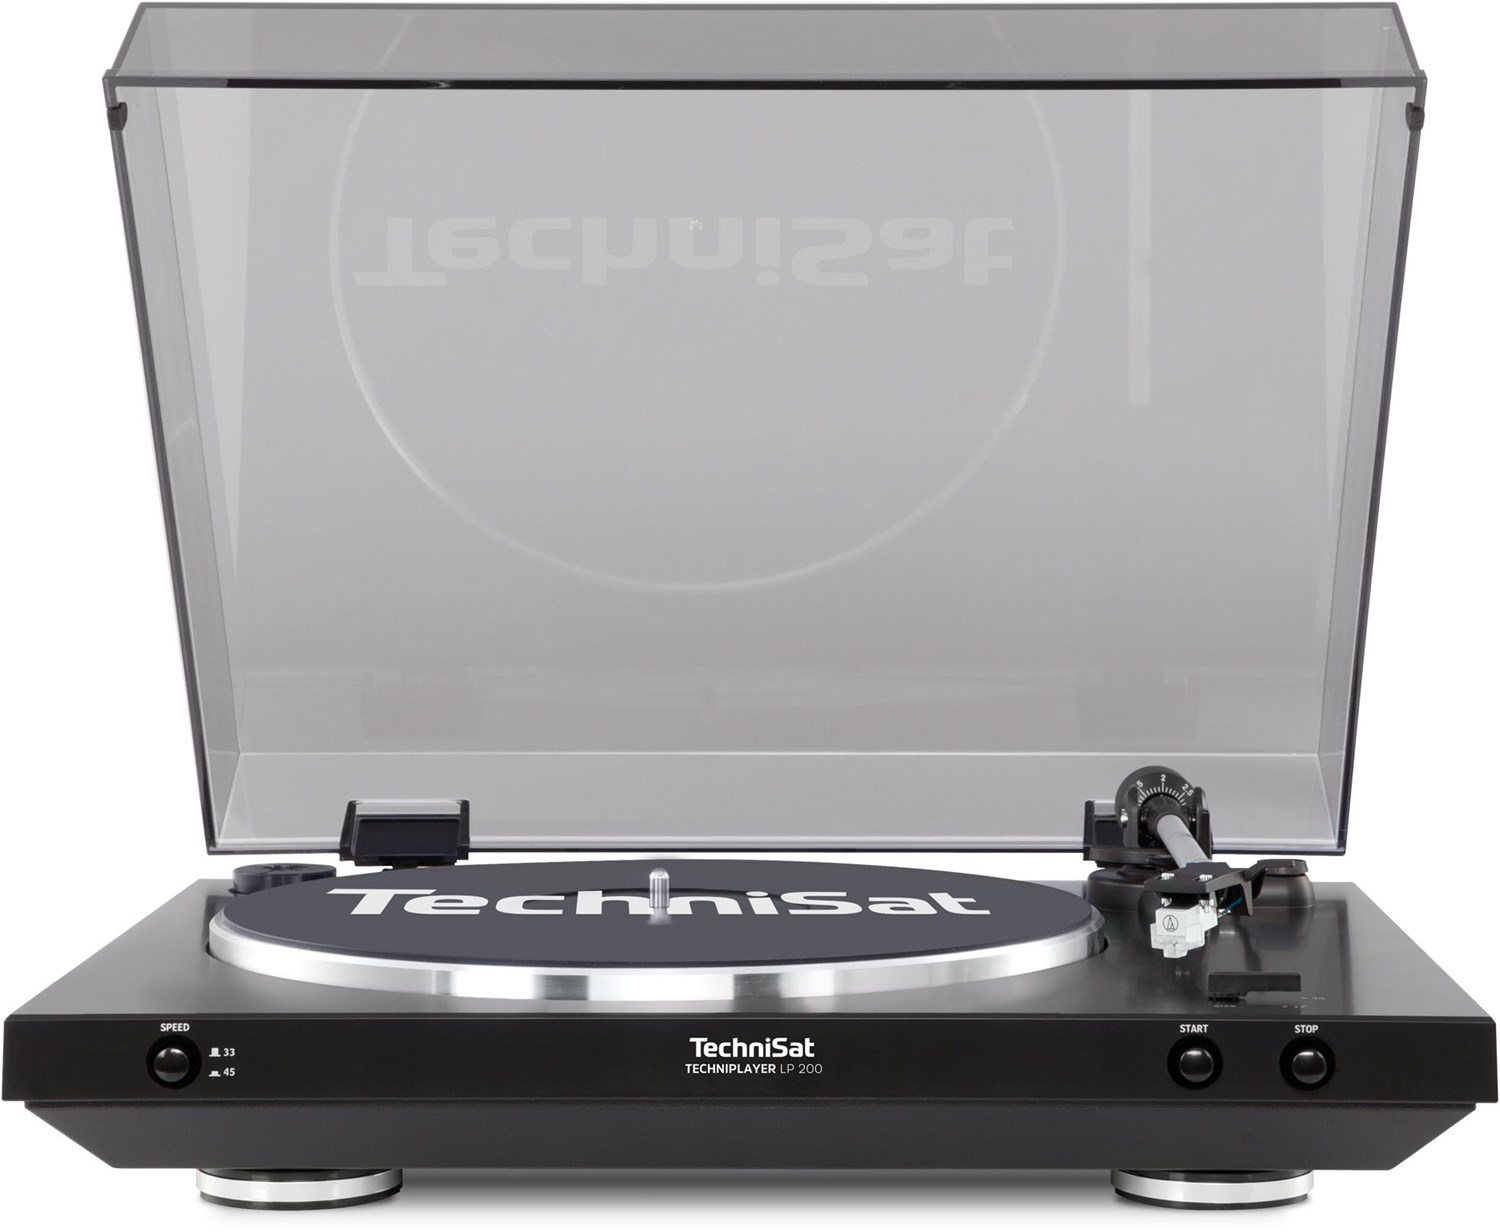 TechniPlayer LP 200 Plattenspieler von Technisat